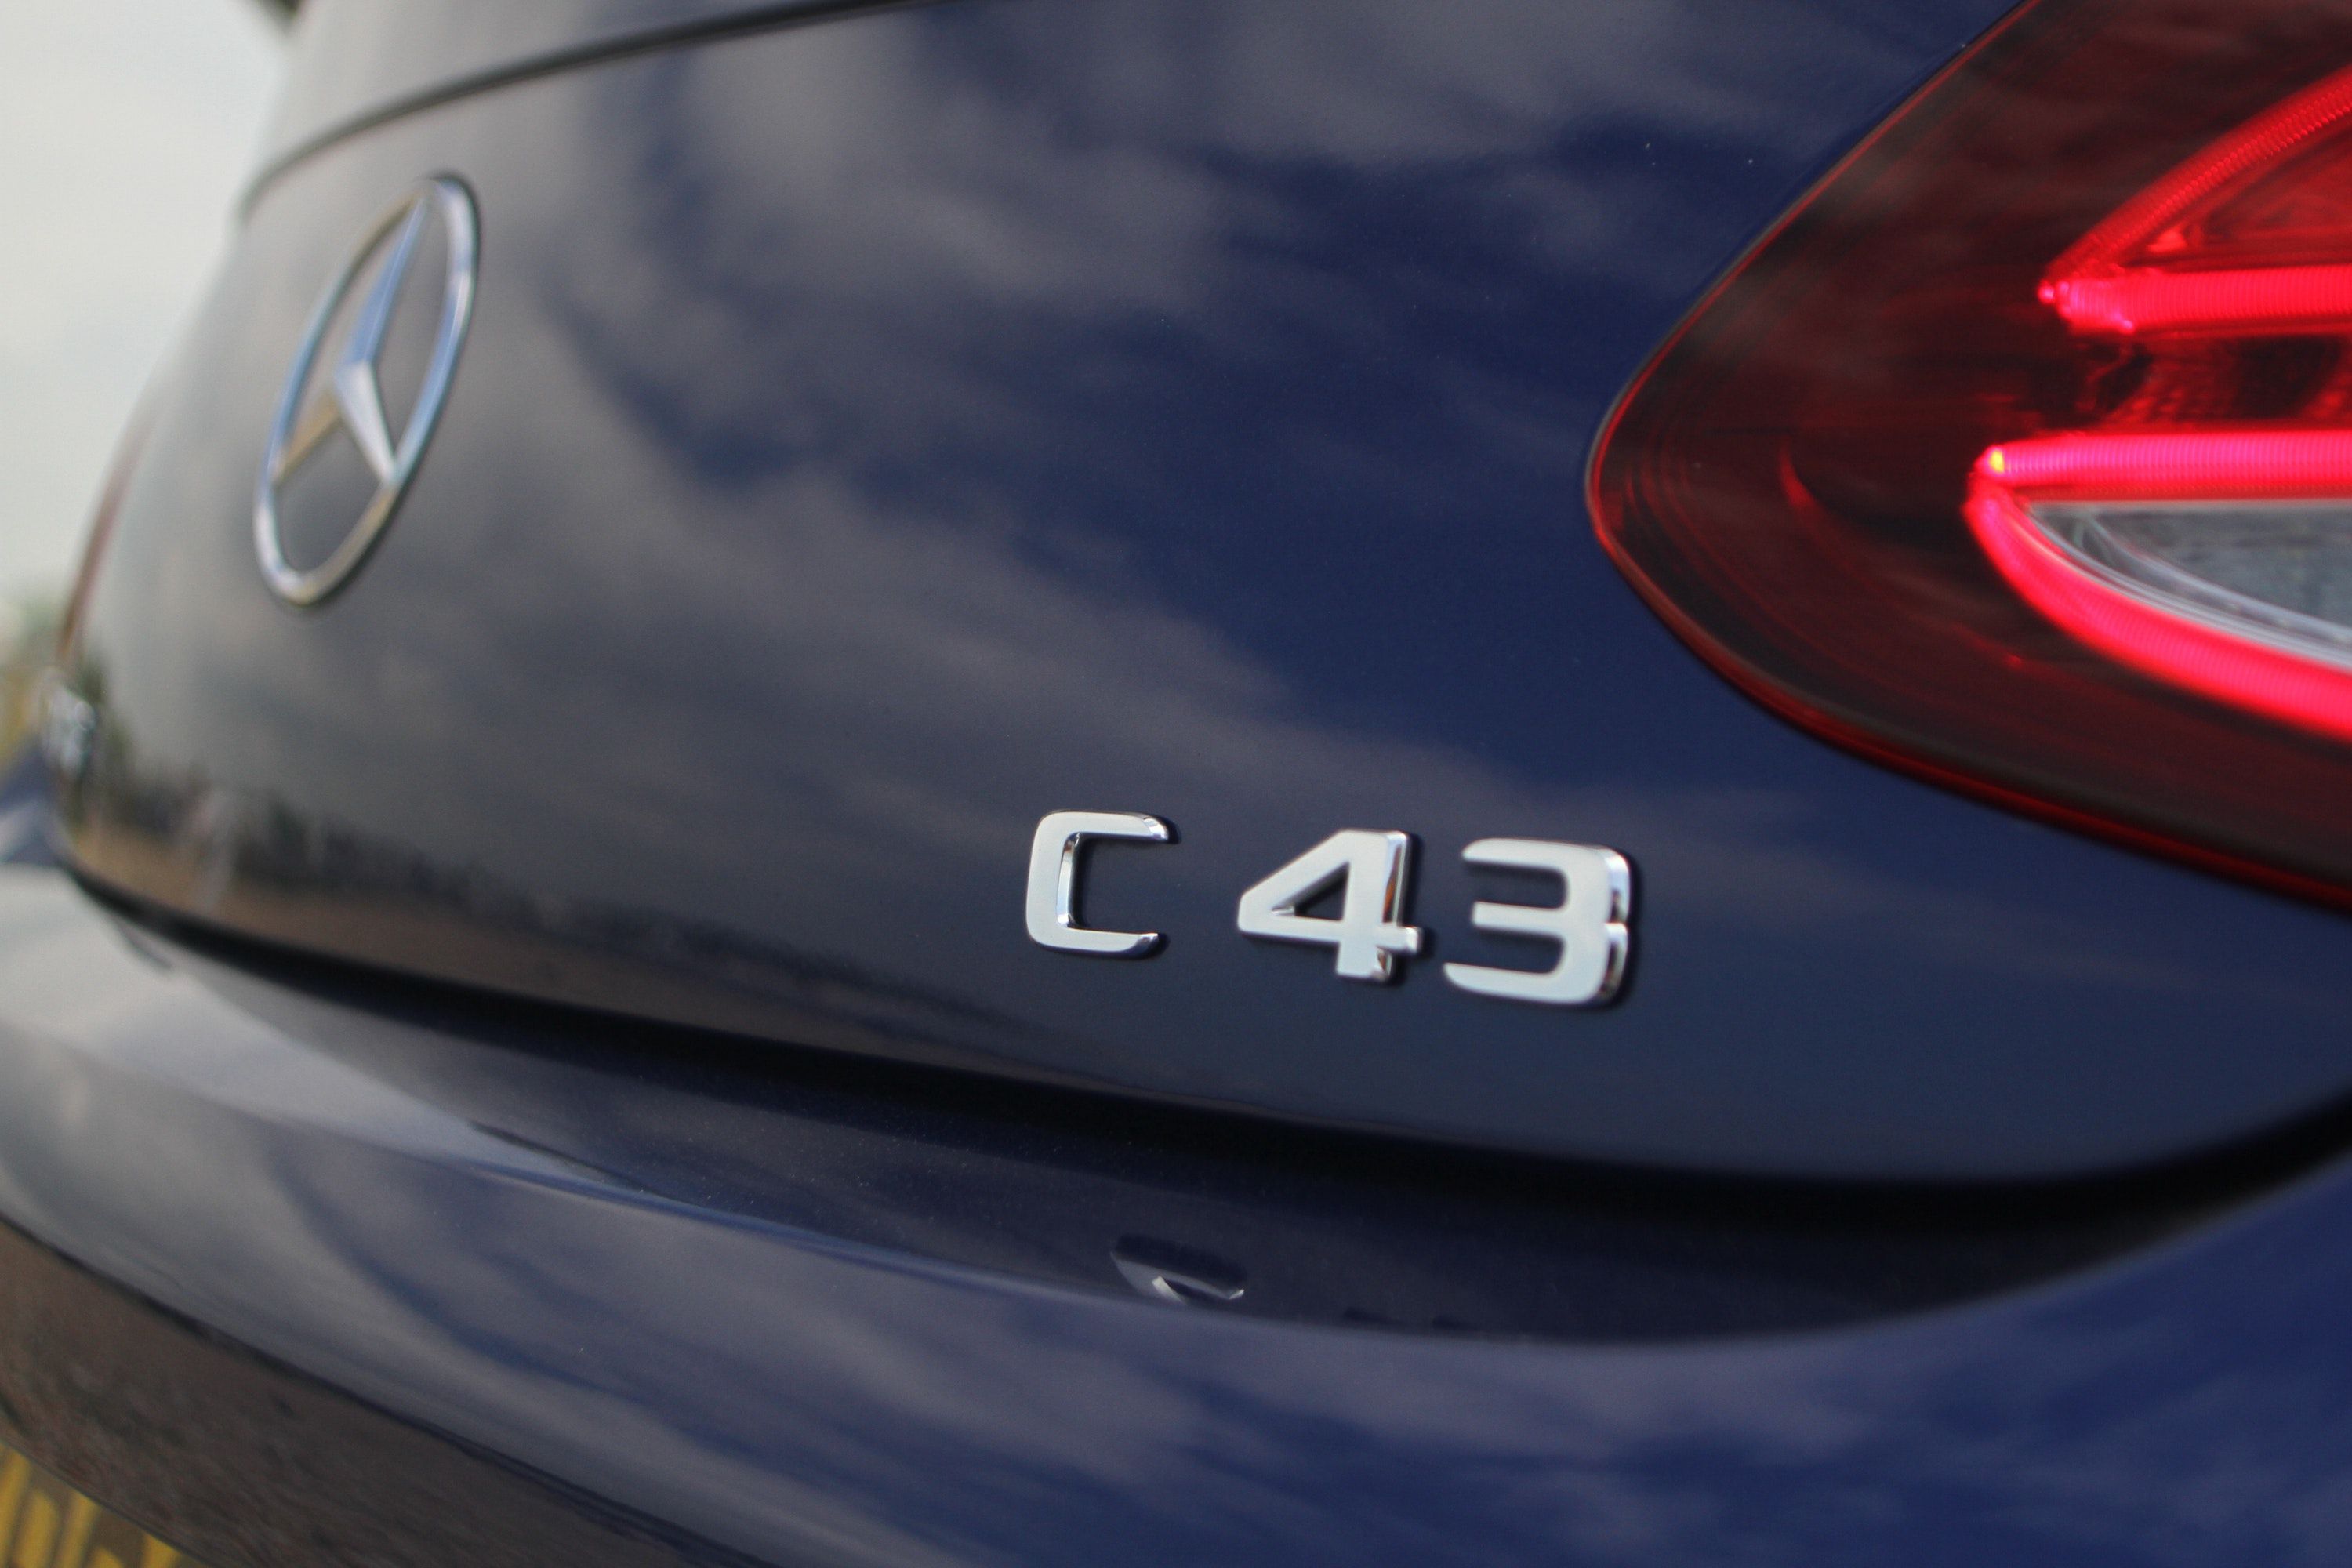 Mercedes Benz C43 car badge